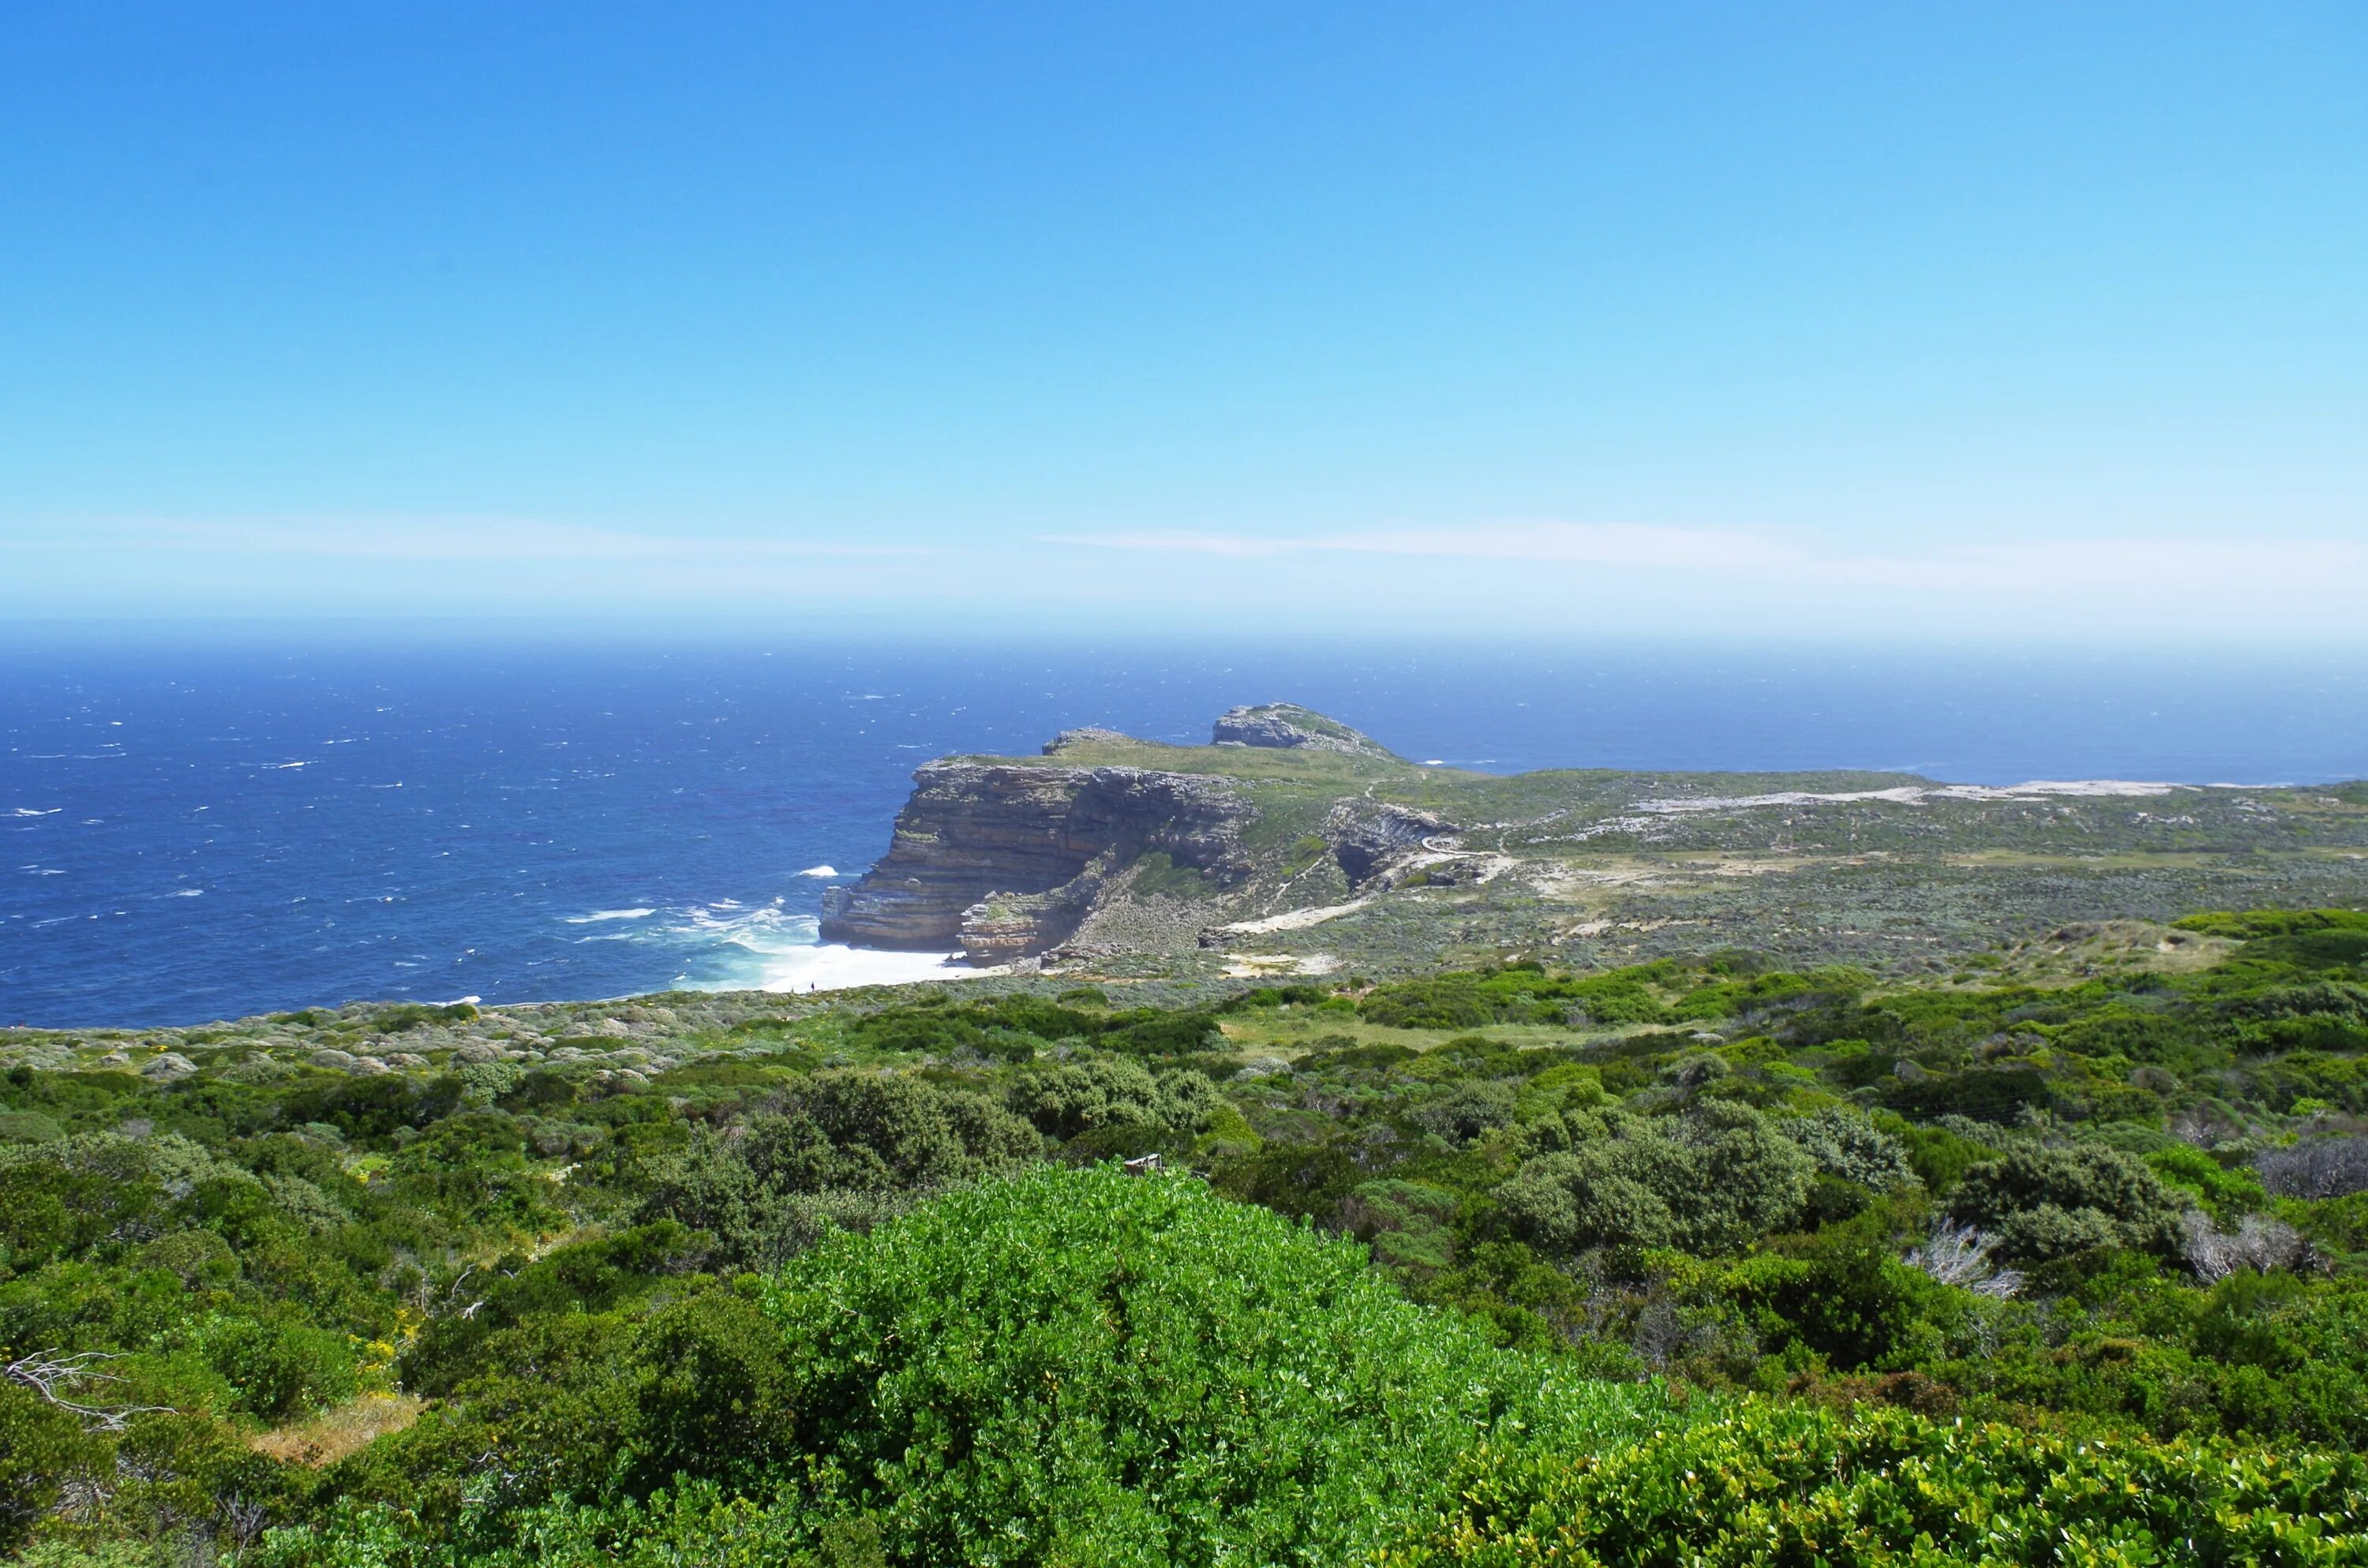 Береговая линия моря атлантического океана. Заповедник Кейп-Пойнт. Национальный парк Кейп-Пойнт, ЮАР. Мыс Саут Пойнт. Мыс Кейп.